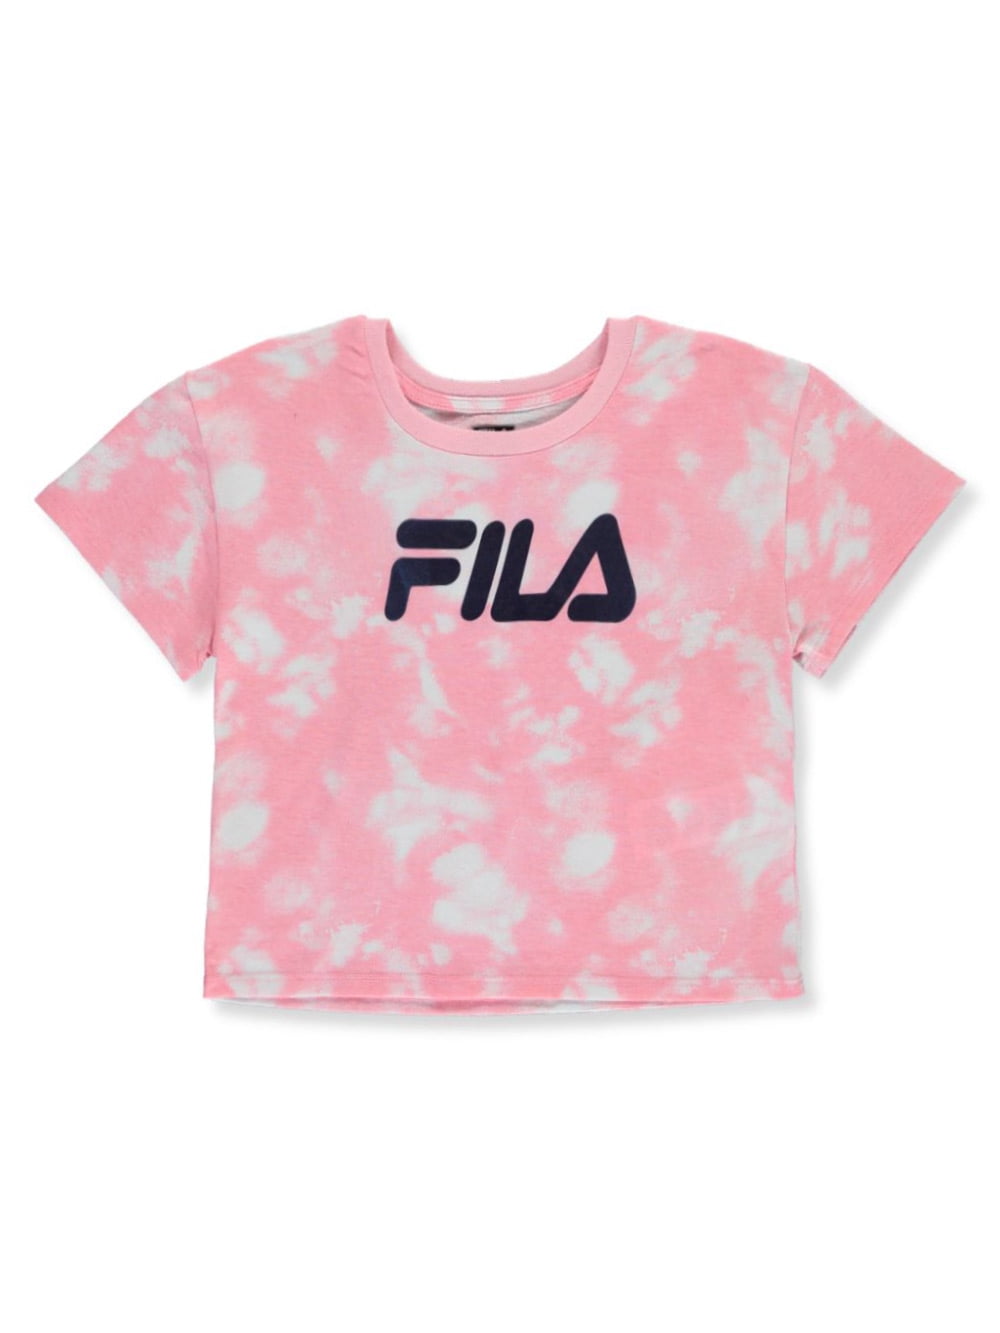 FILA - Flia Girls' Tie Dye Crop Top 